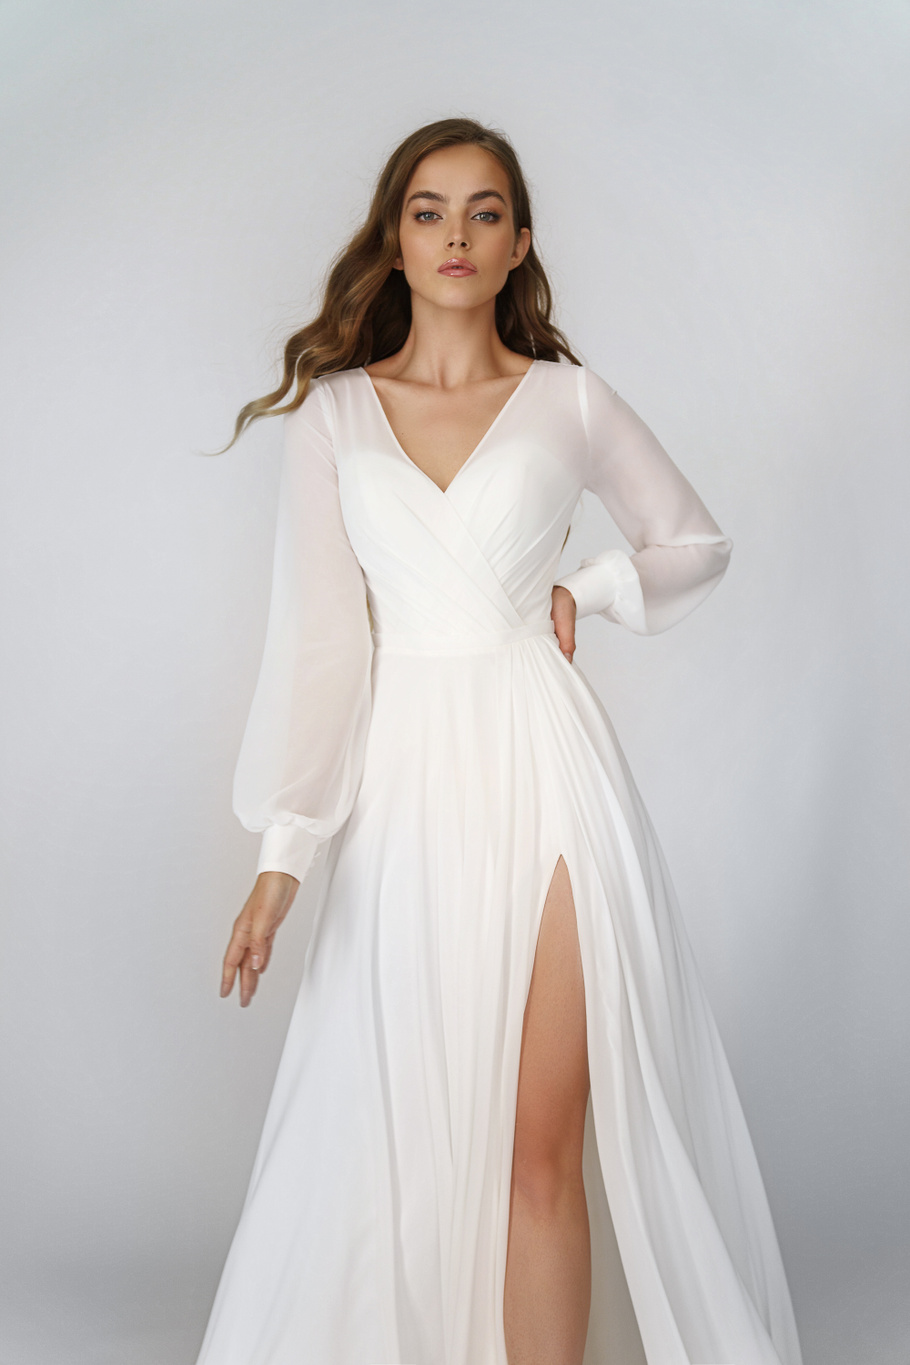 Свадебное платье «Осфадель» Марта — купить в Санкт-Петербурге платье Осфадель из коллекции 2021 года